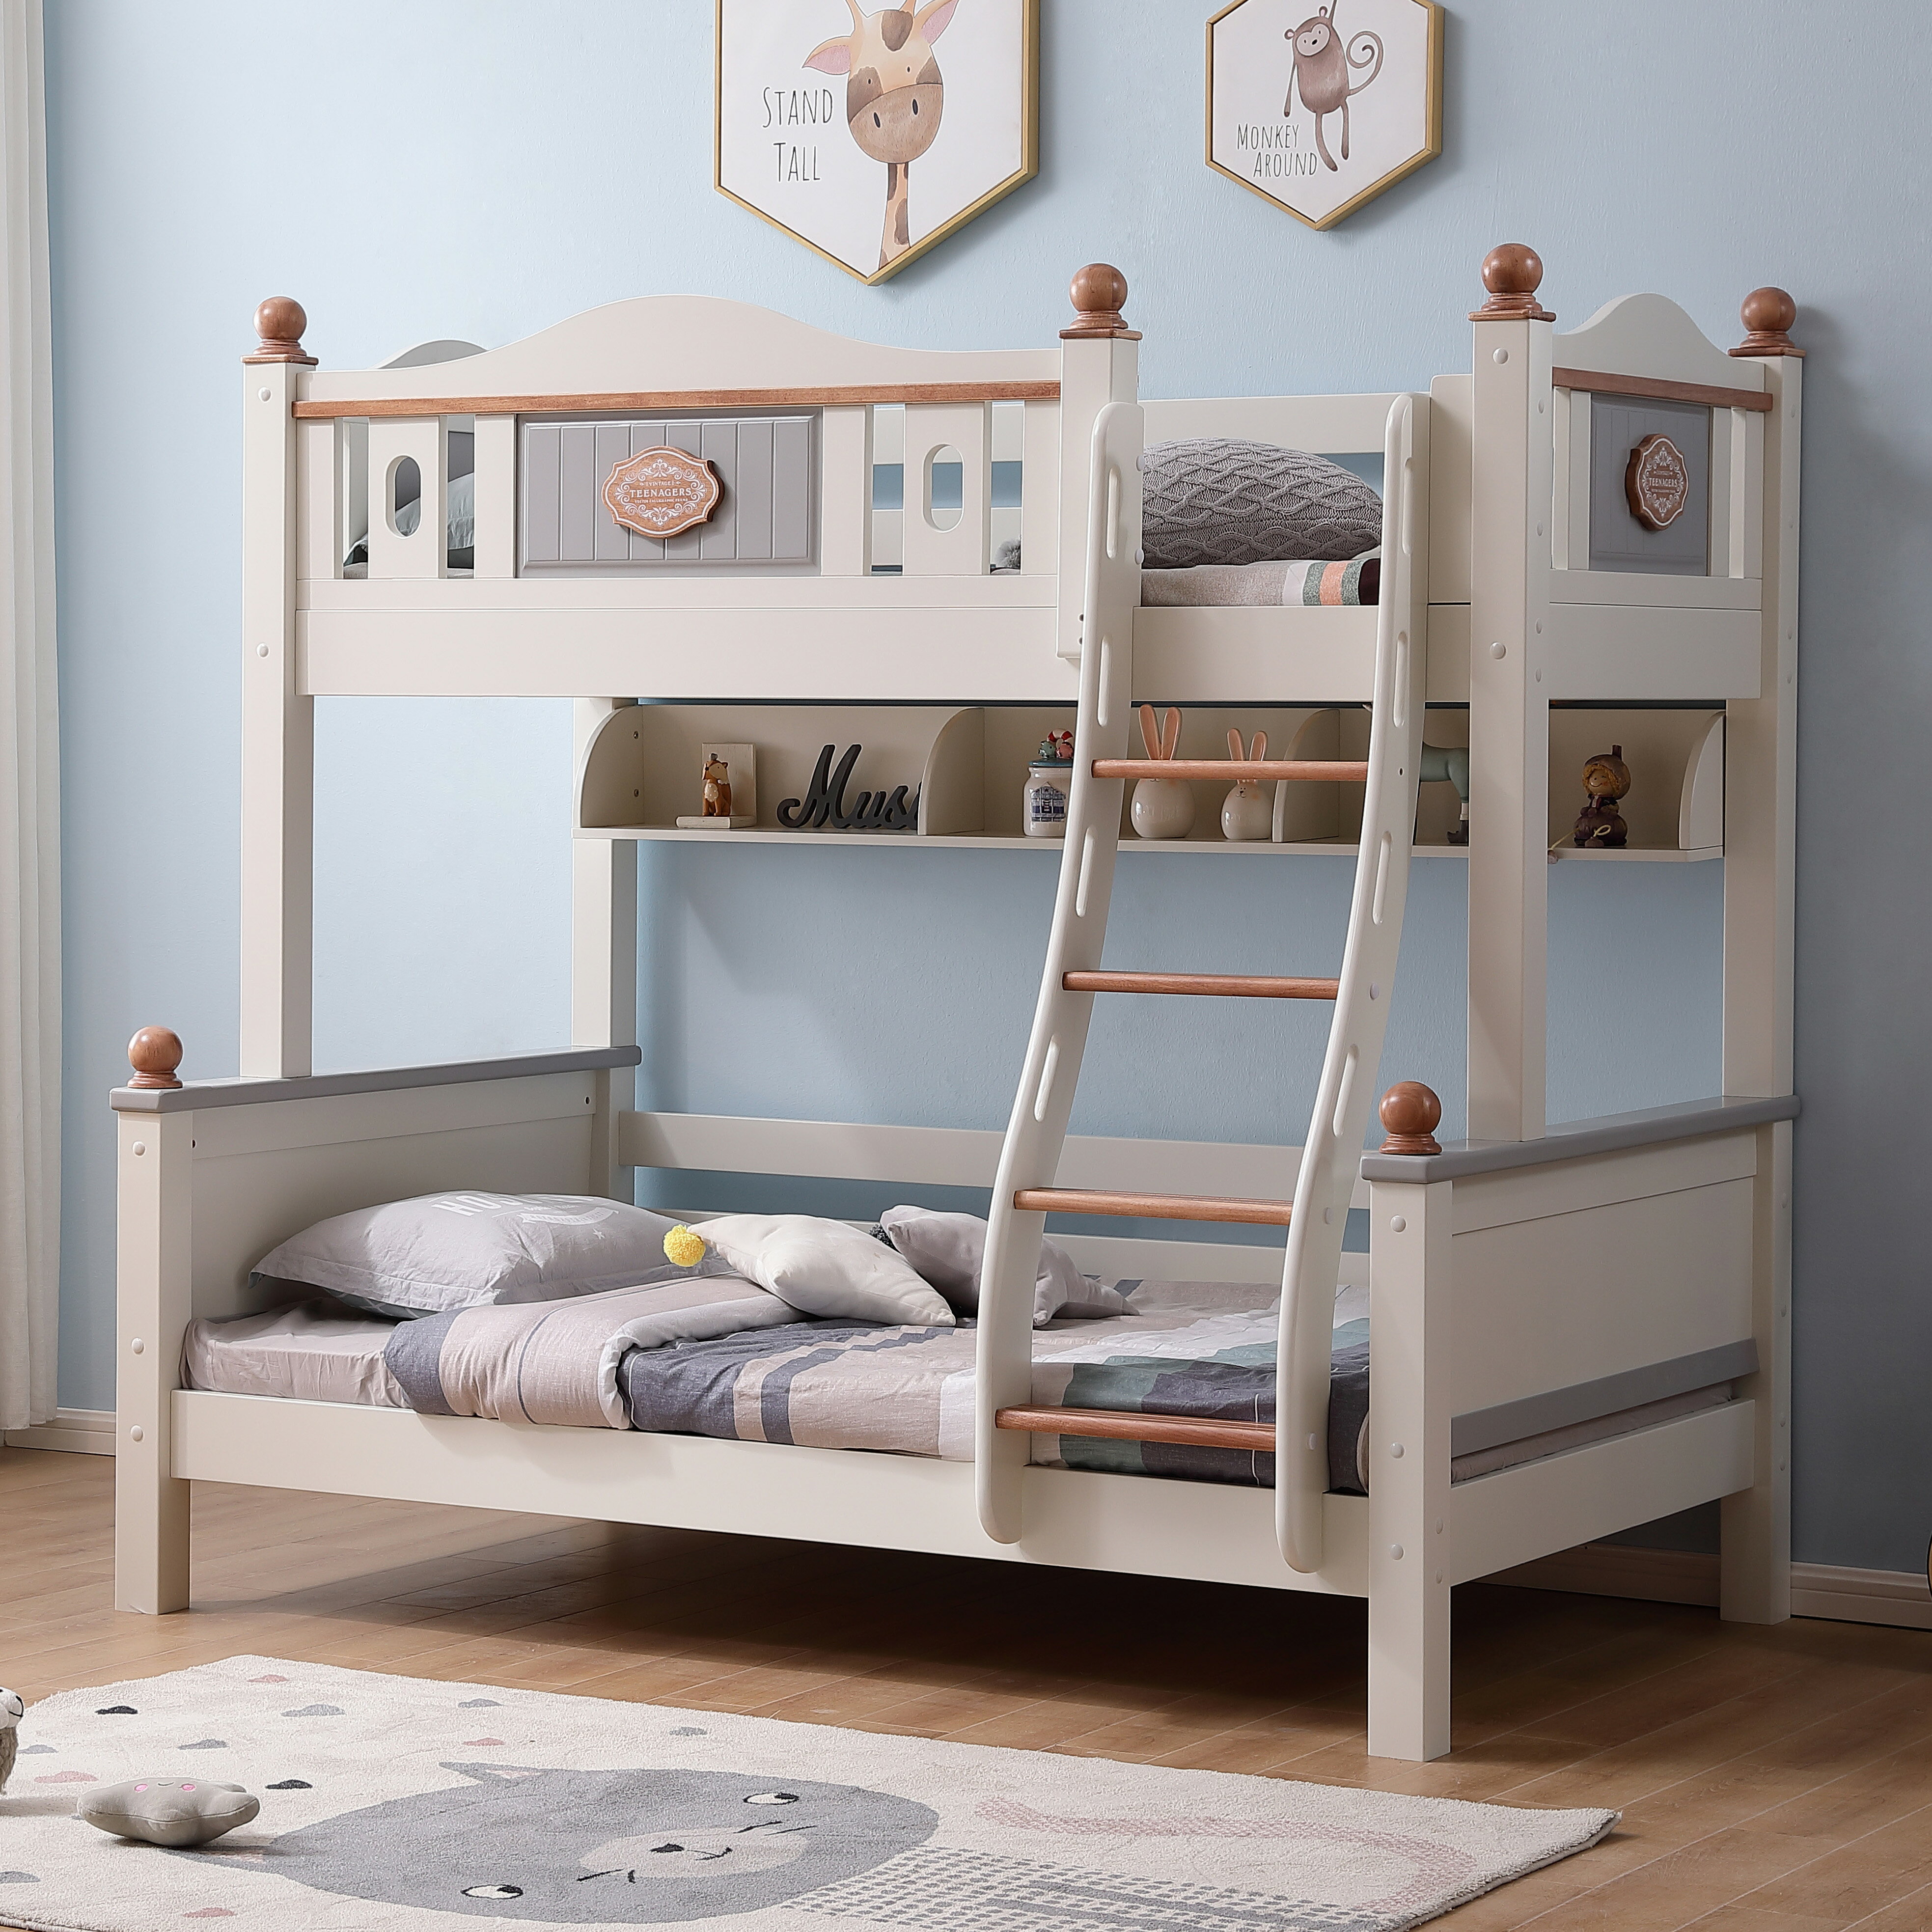 實木男孩雙層高低床兒童床多功能組合女孩子母床橡膠木雙層上下鋪